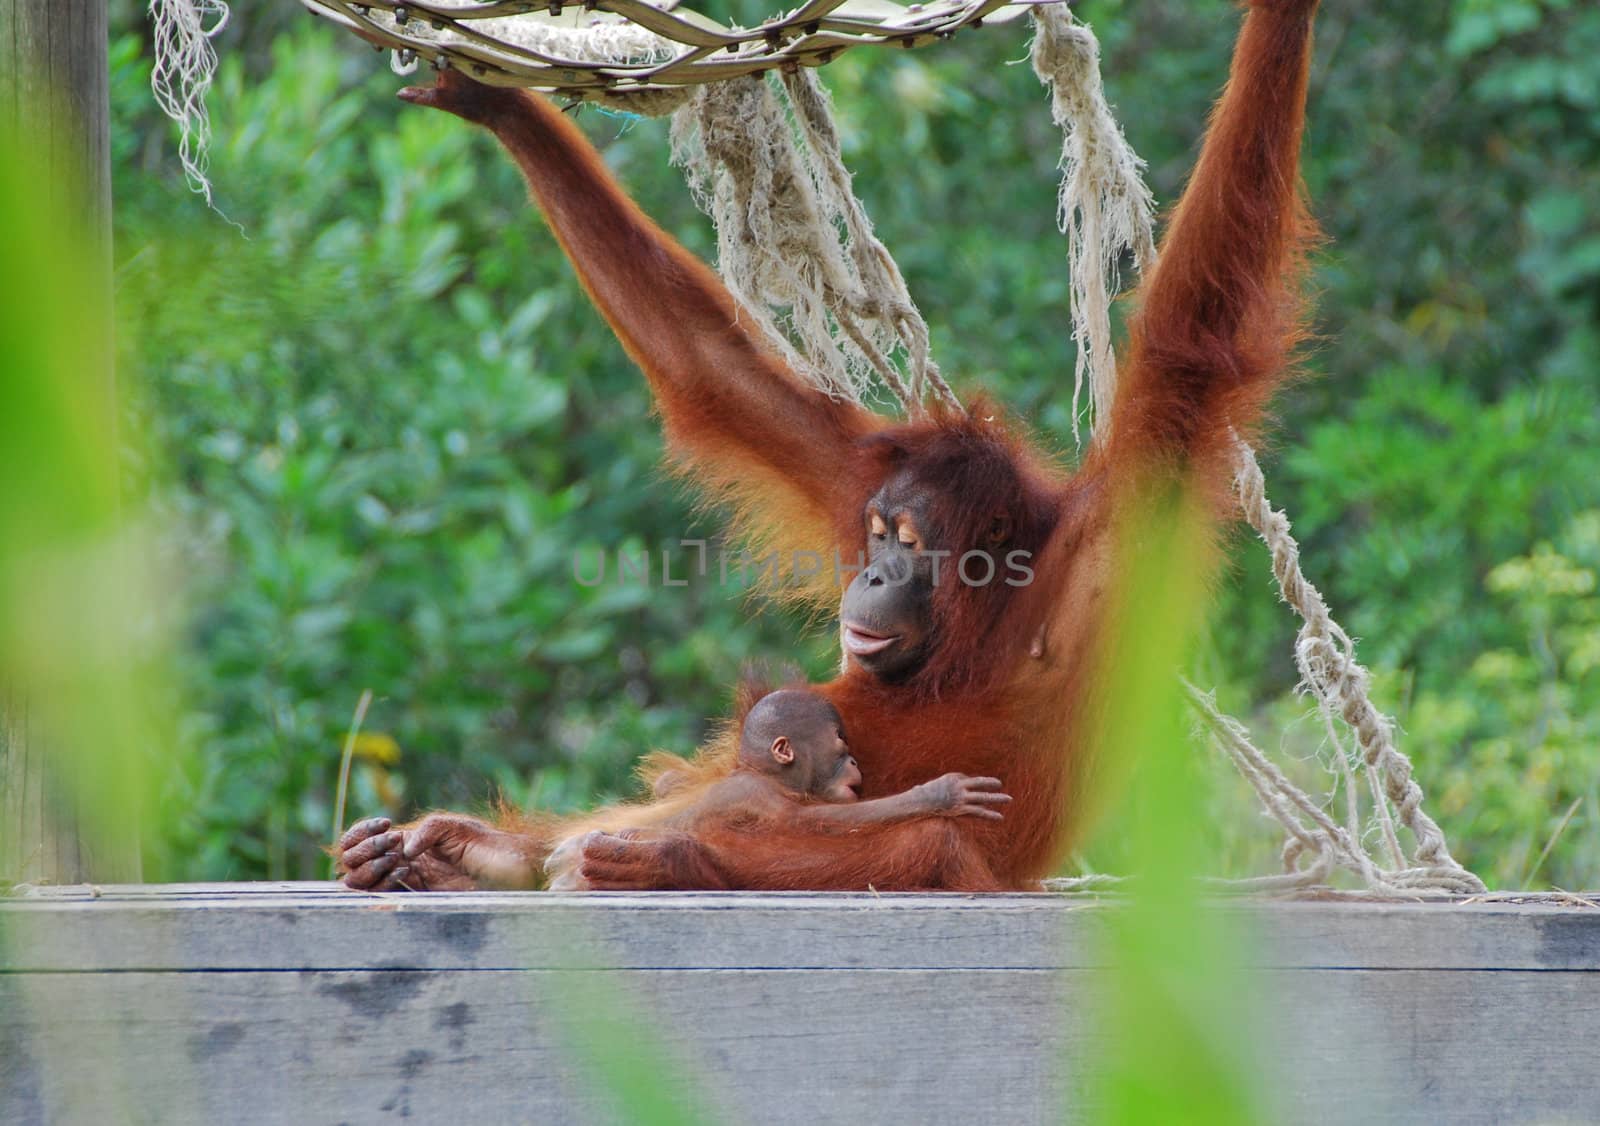 Clos-up of a mother and baby orang utan